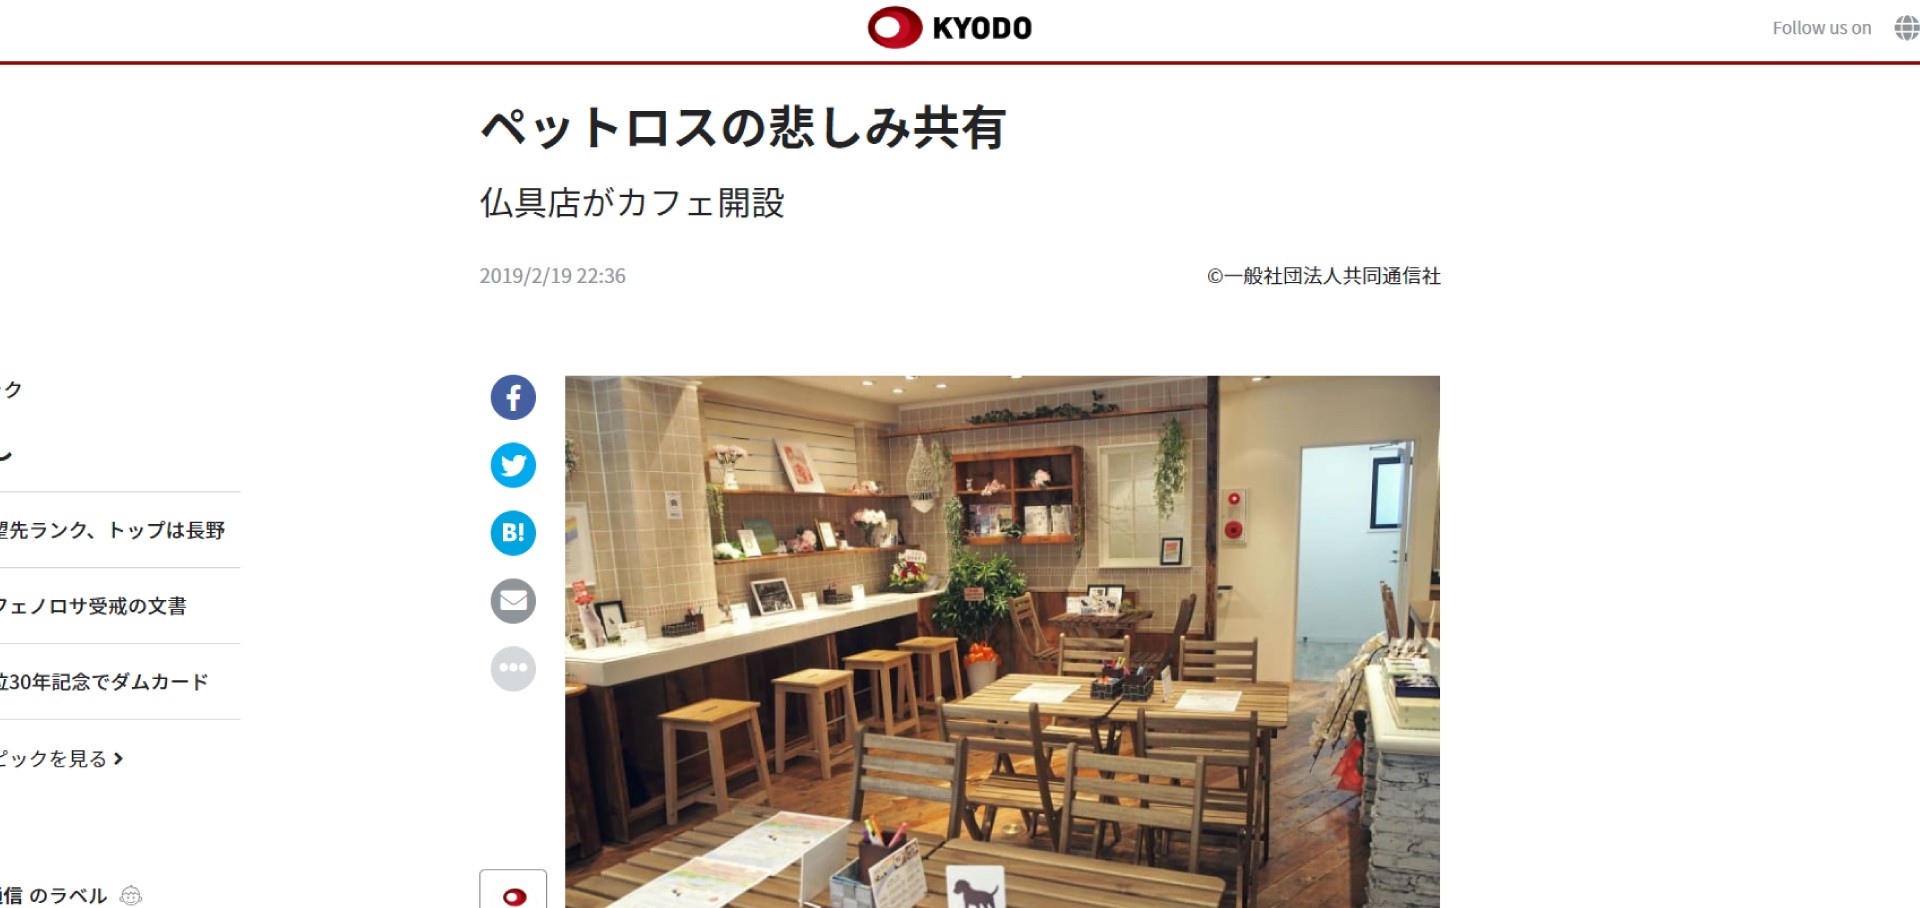 ディアペット東京本店のペットロスカフェが共同通信様より掲載されました